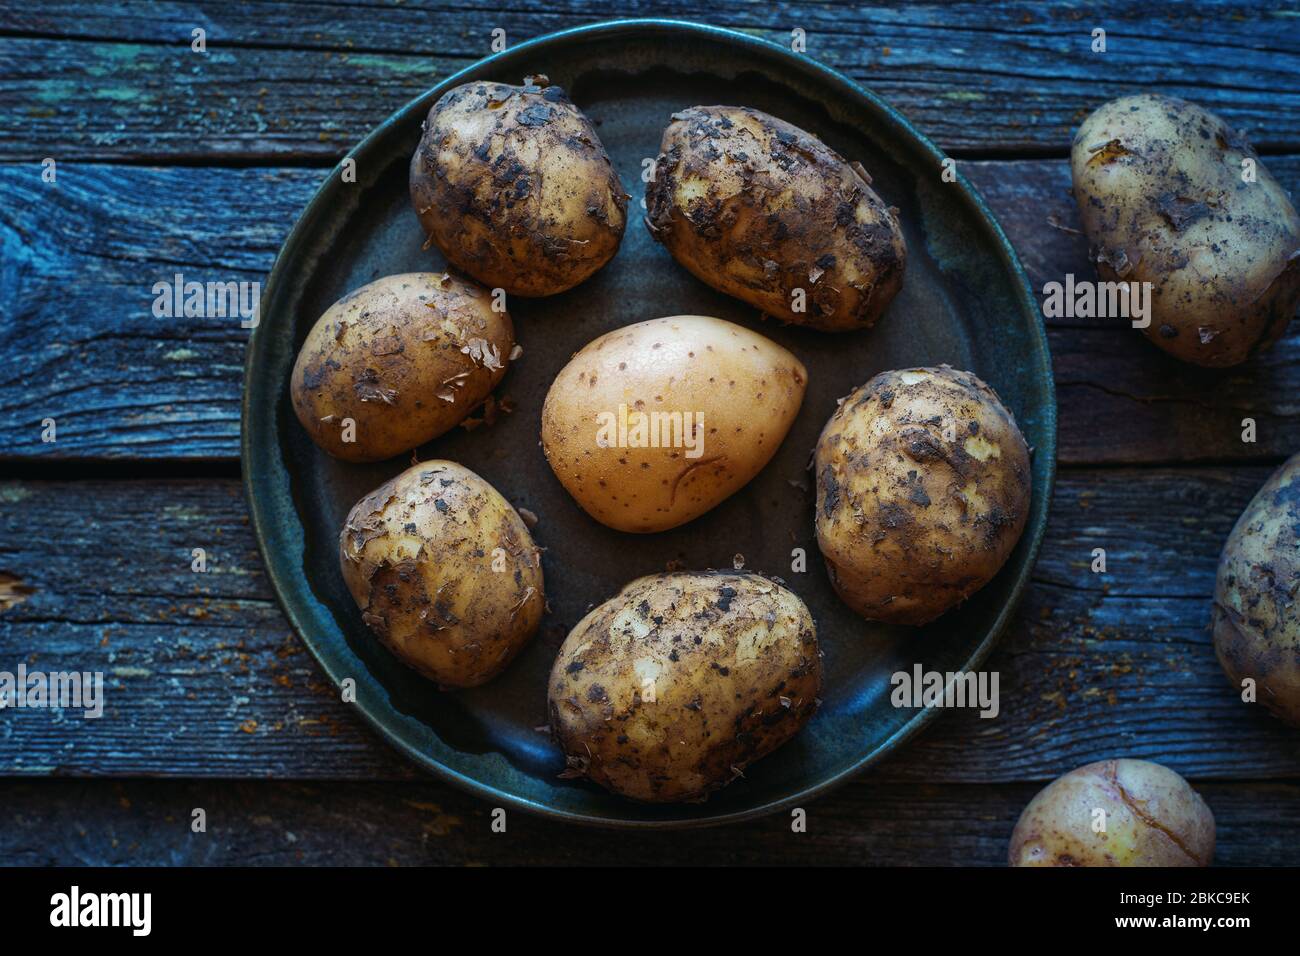 Des pommes de terre jeunes non cuites sales et lavées dans une assiette sur une vieille table de bois de la nourriture de ferme Banque D'Images